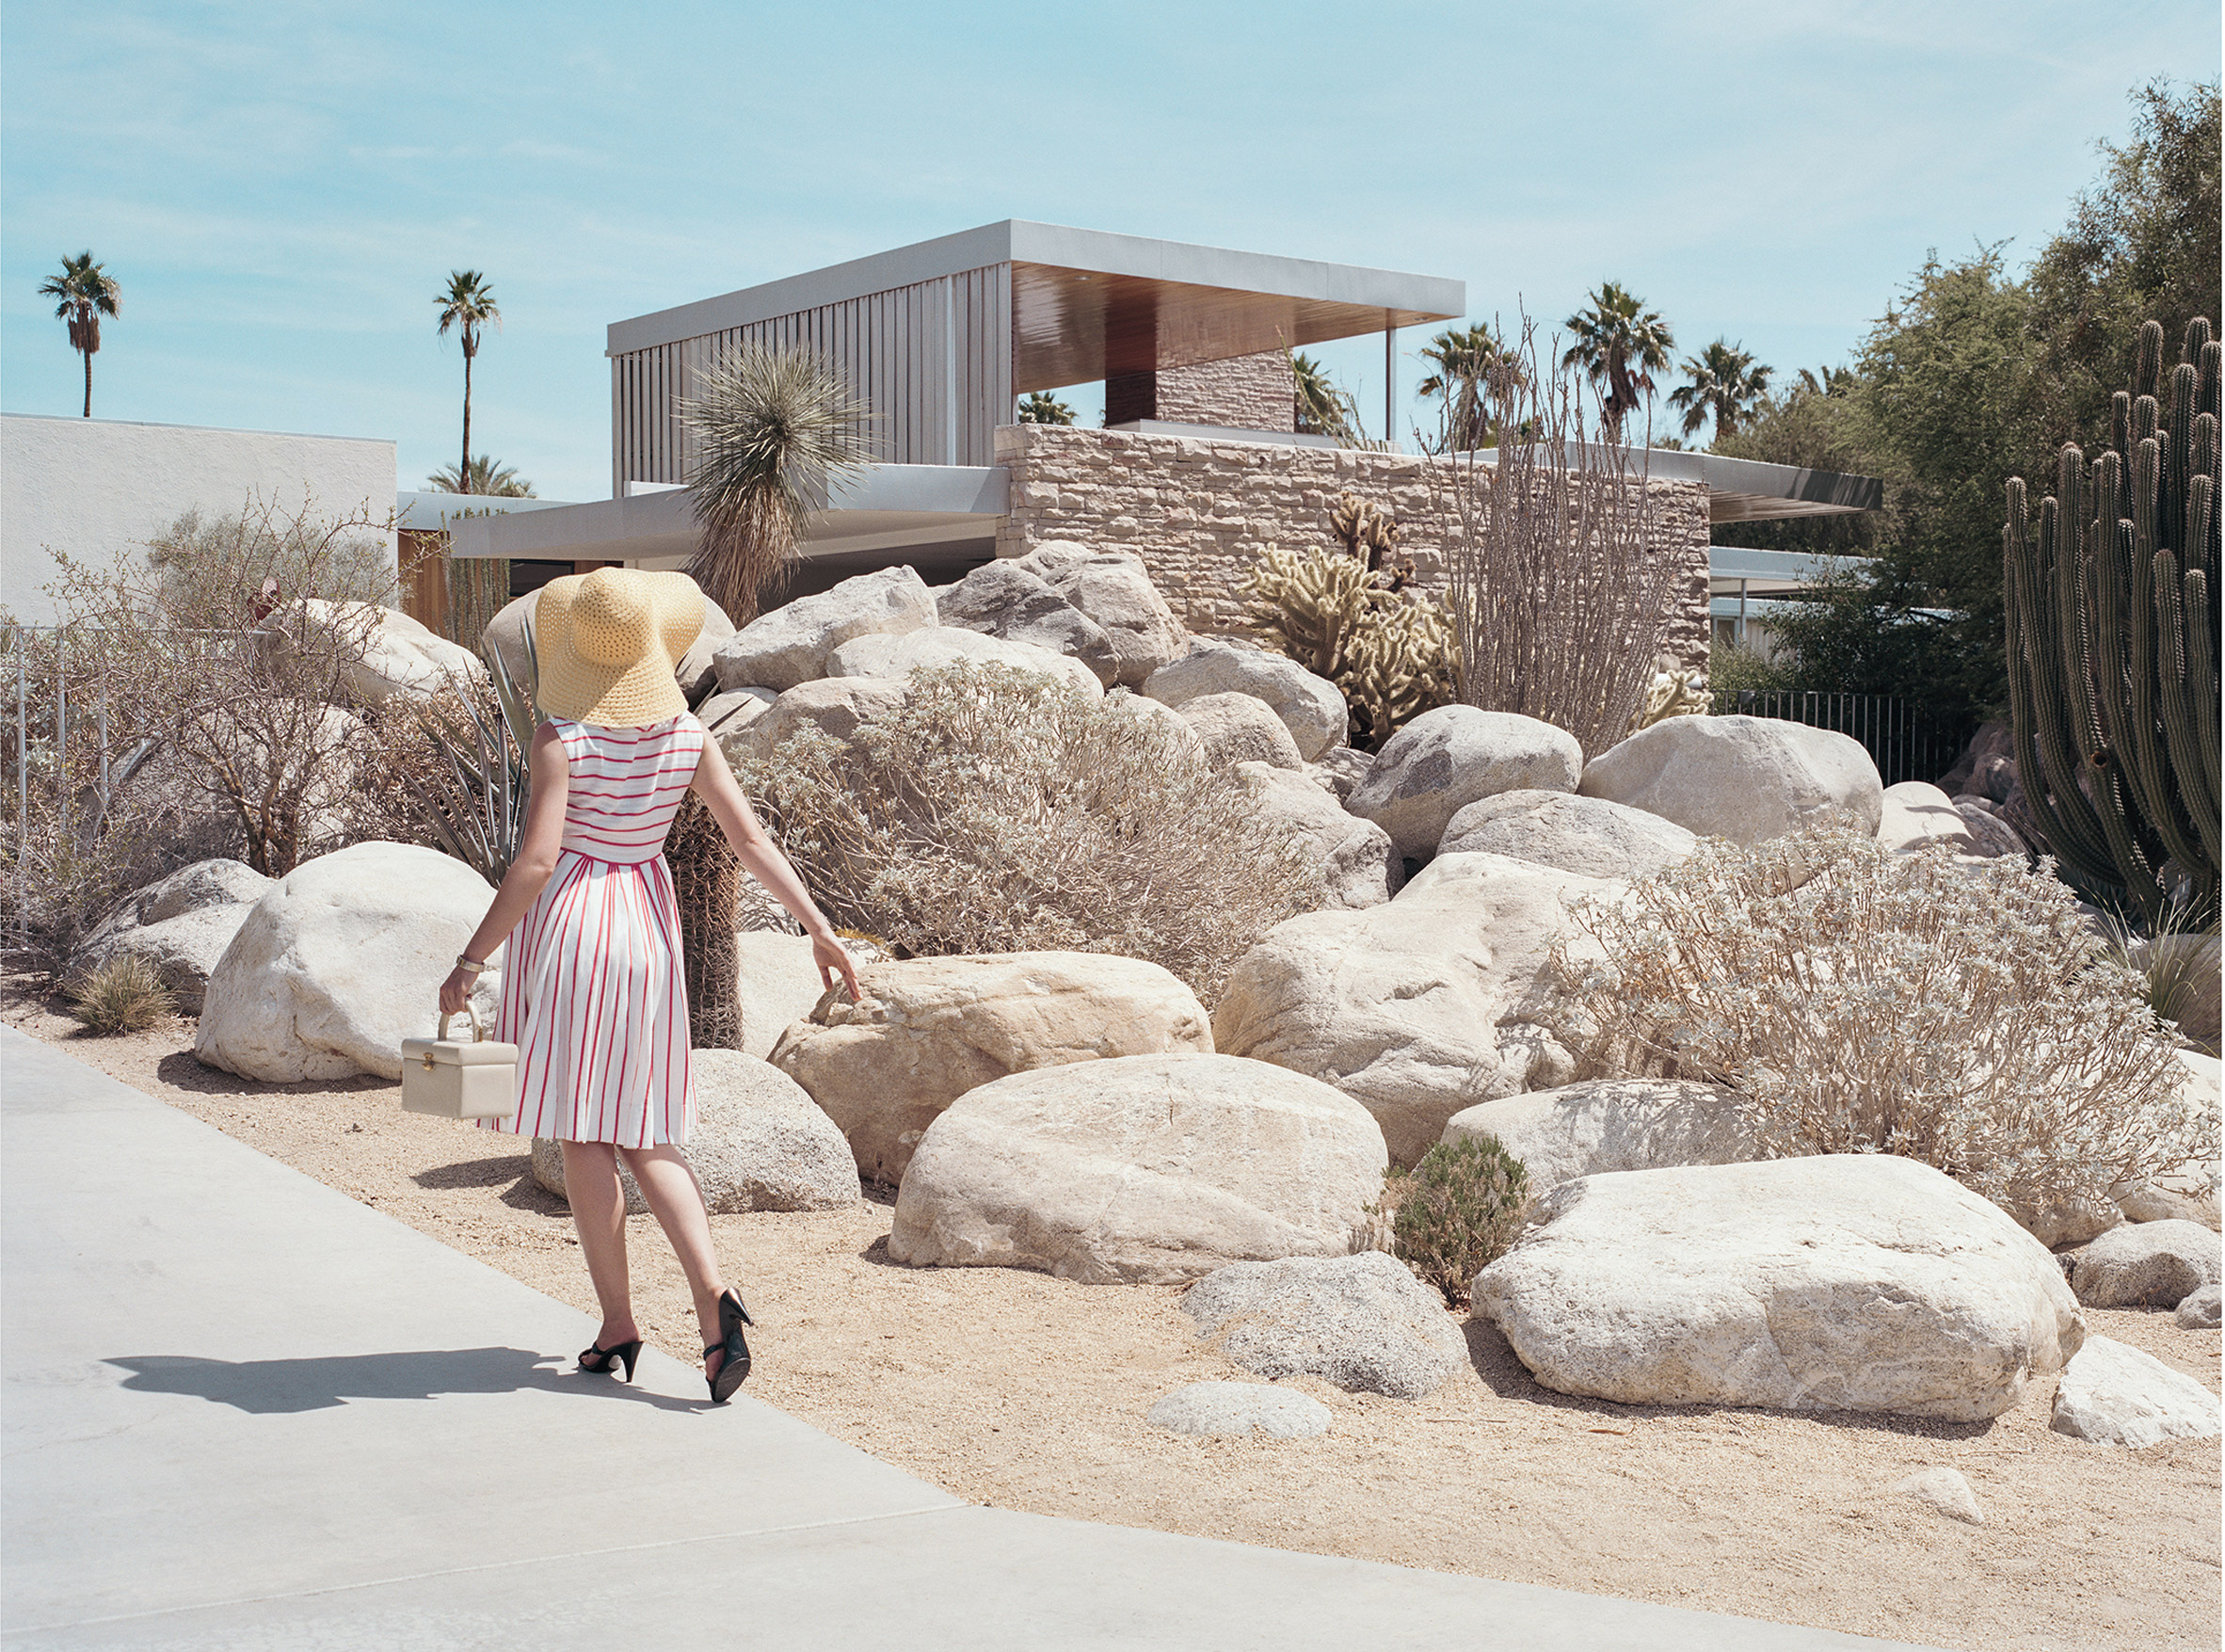 Richard Neutra's Kaufmann House epitomises desert modernism in Palm Springs